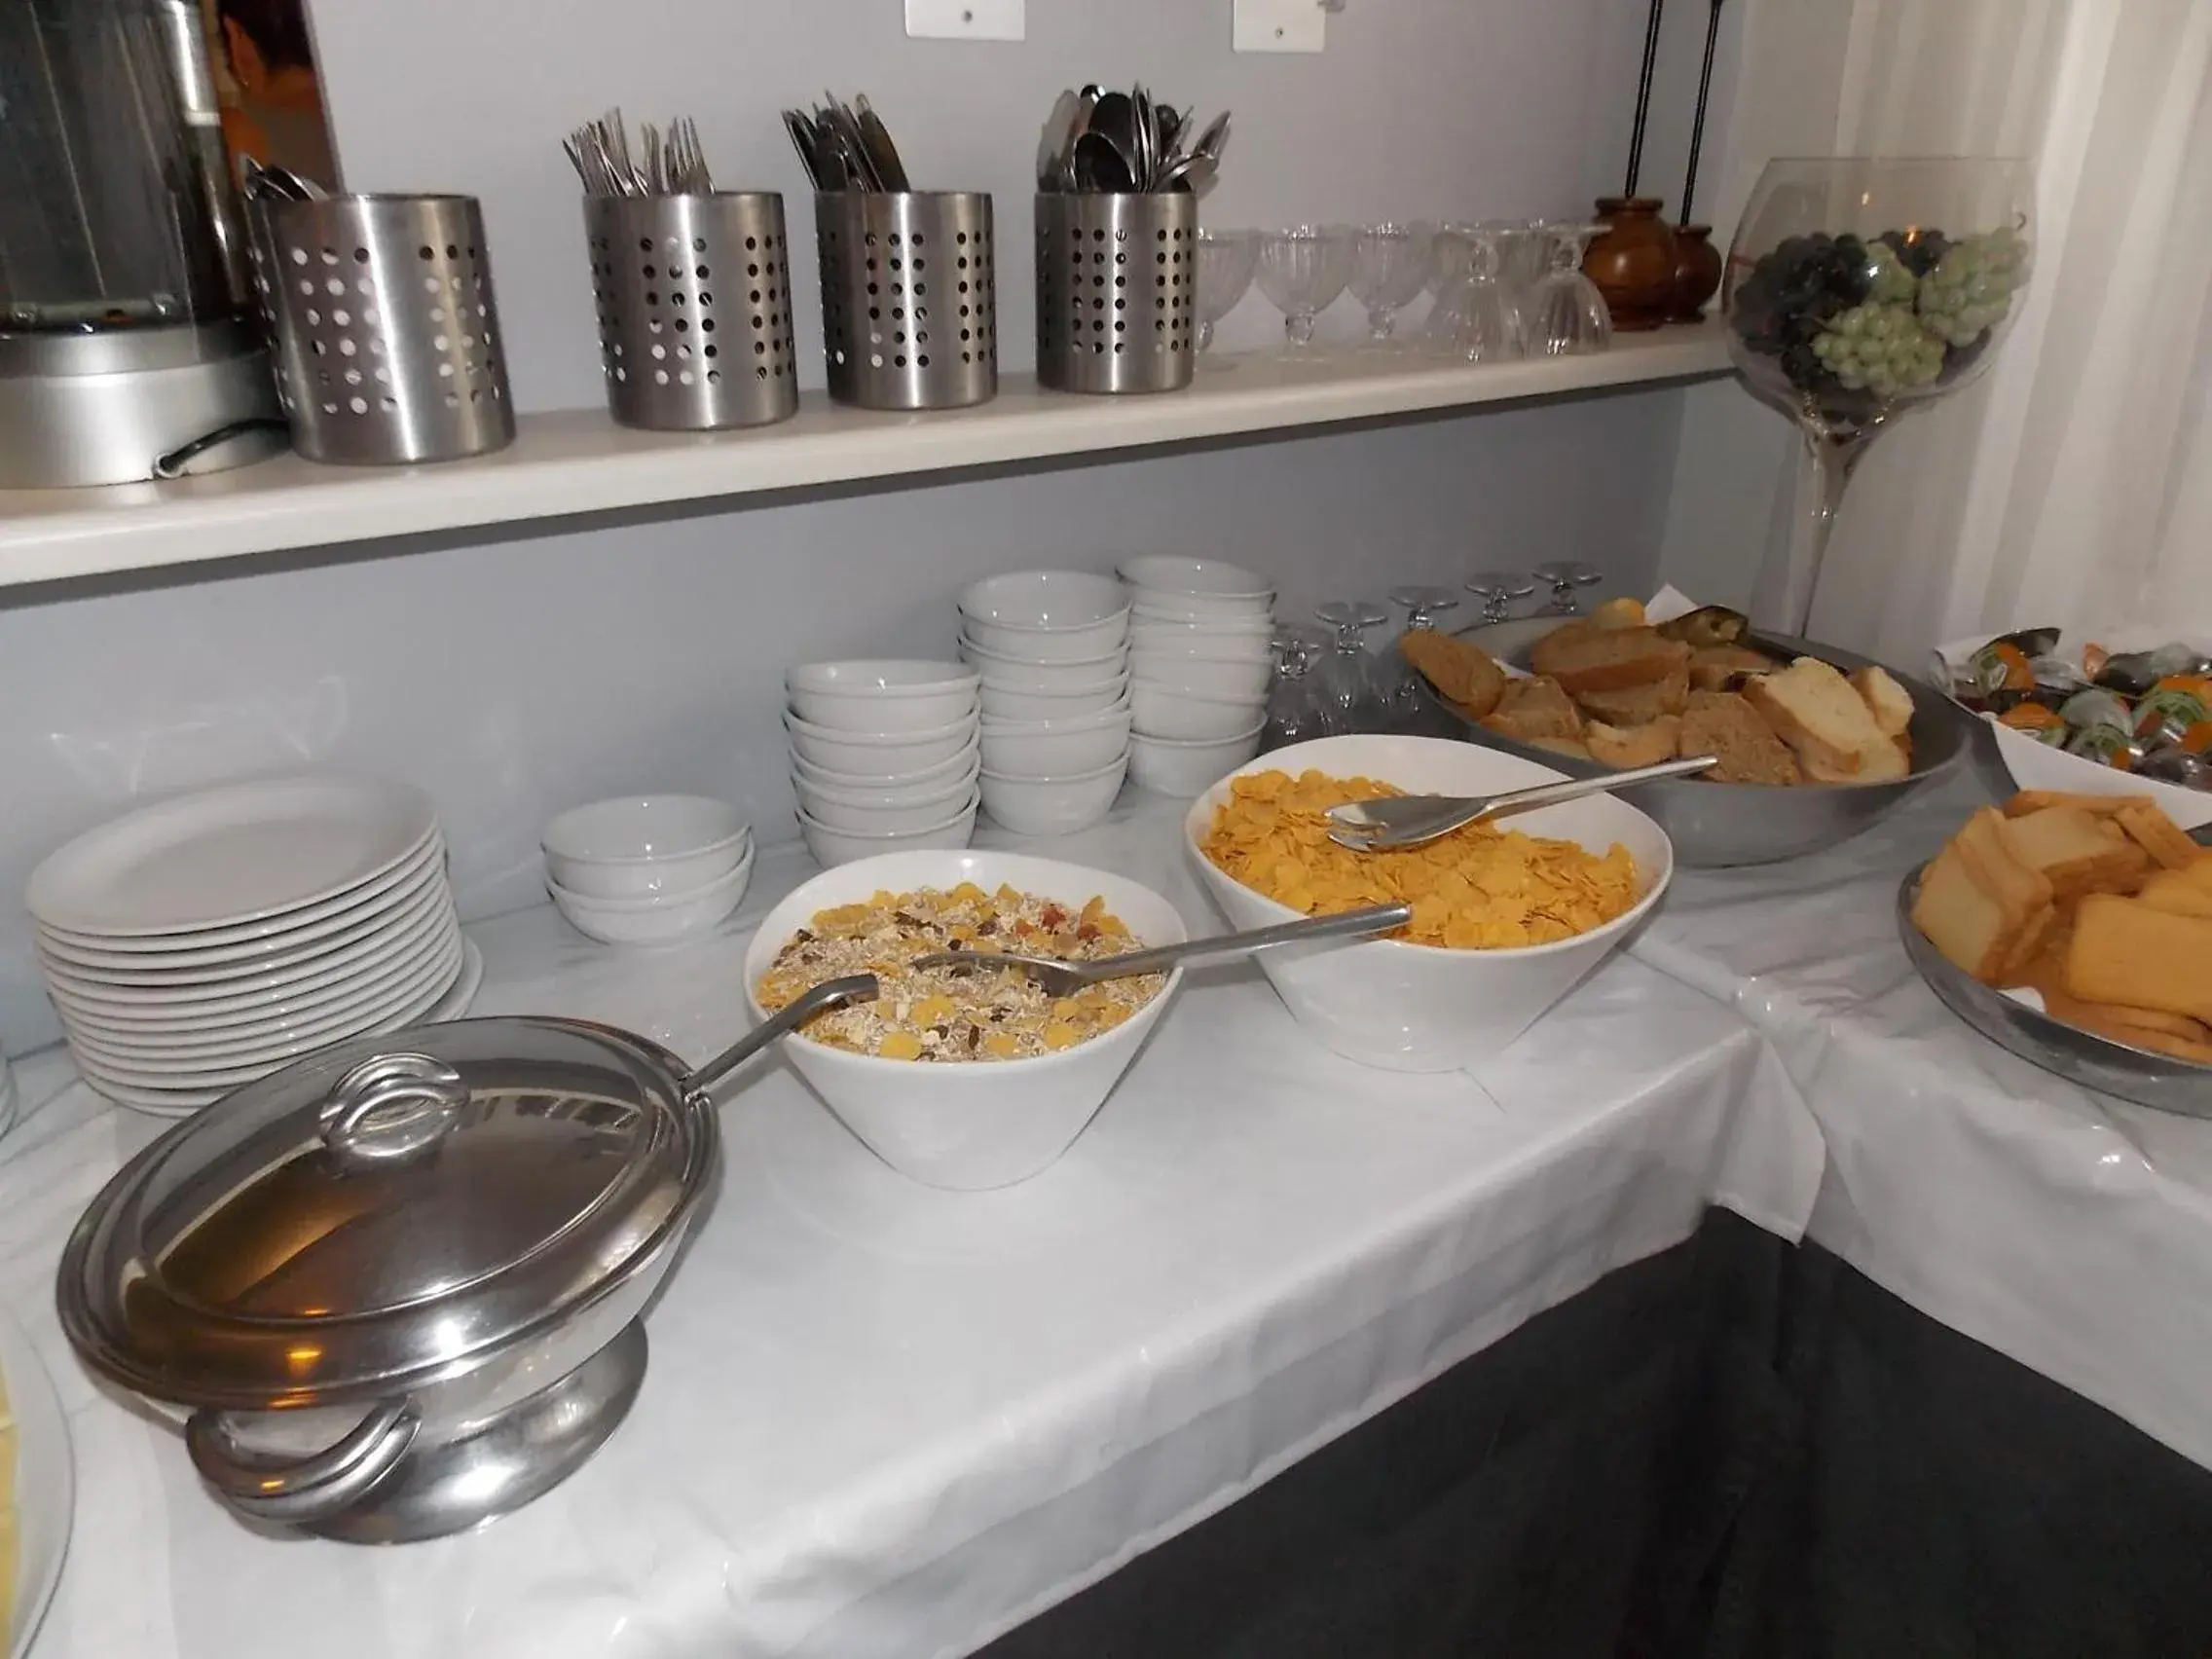 Buffet breakfast in Danaos Hotel